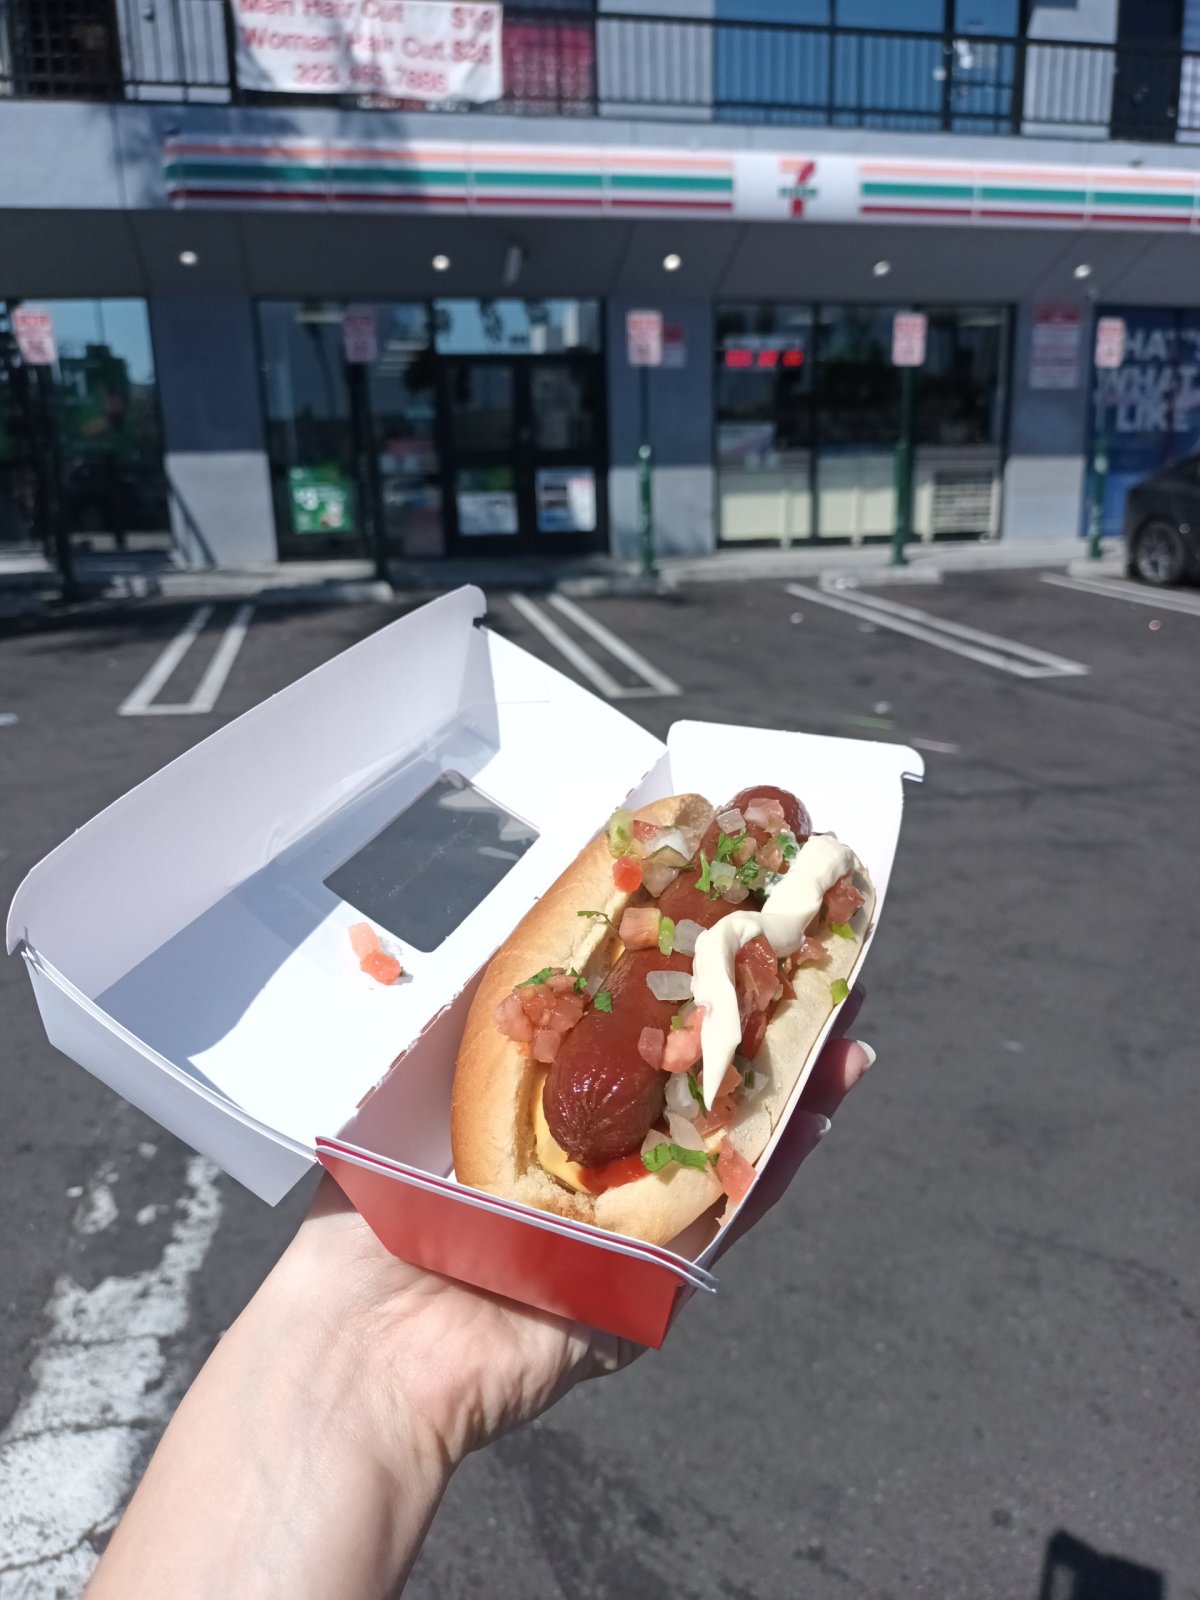 Hot dog ze 7-Eleven za 3 doláče 